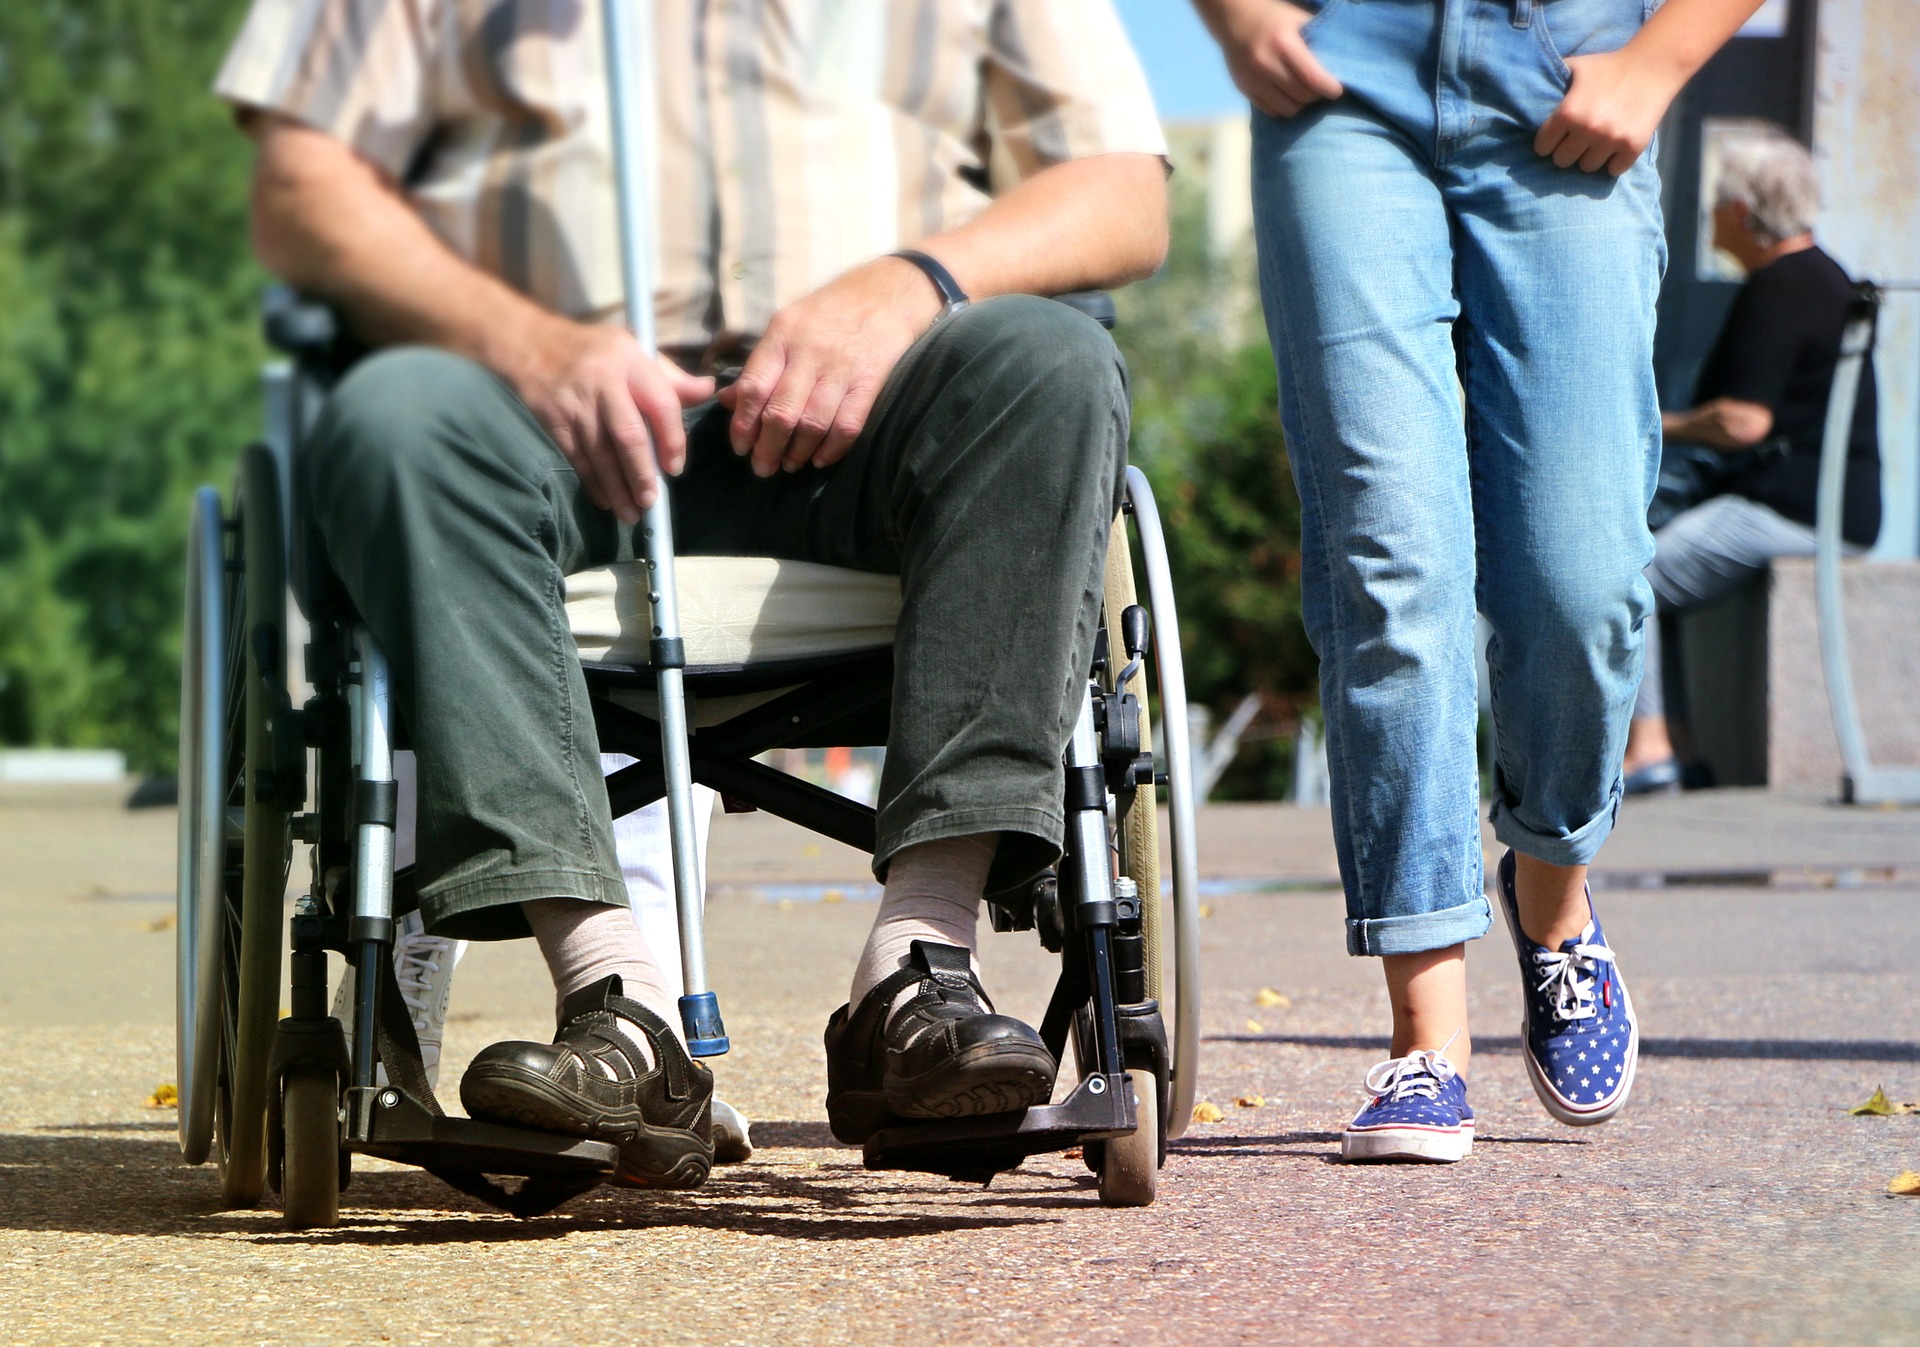 Rollstuhl Pflegegrad 3: Auf dem Bild ist ein Mann im Rollstuhl zu sehen und daneben läuft eine Person.